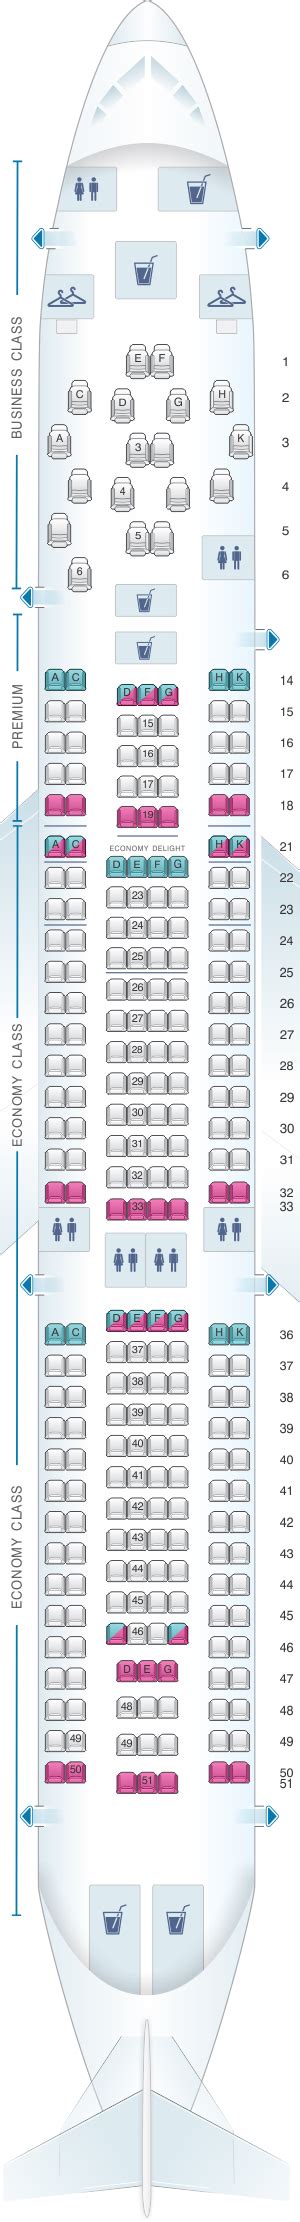 Seat Map Virgin Atlantic Airbus A330 200 Seatmaestro